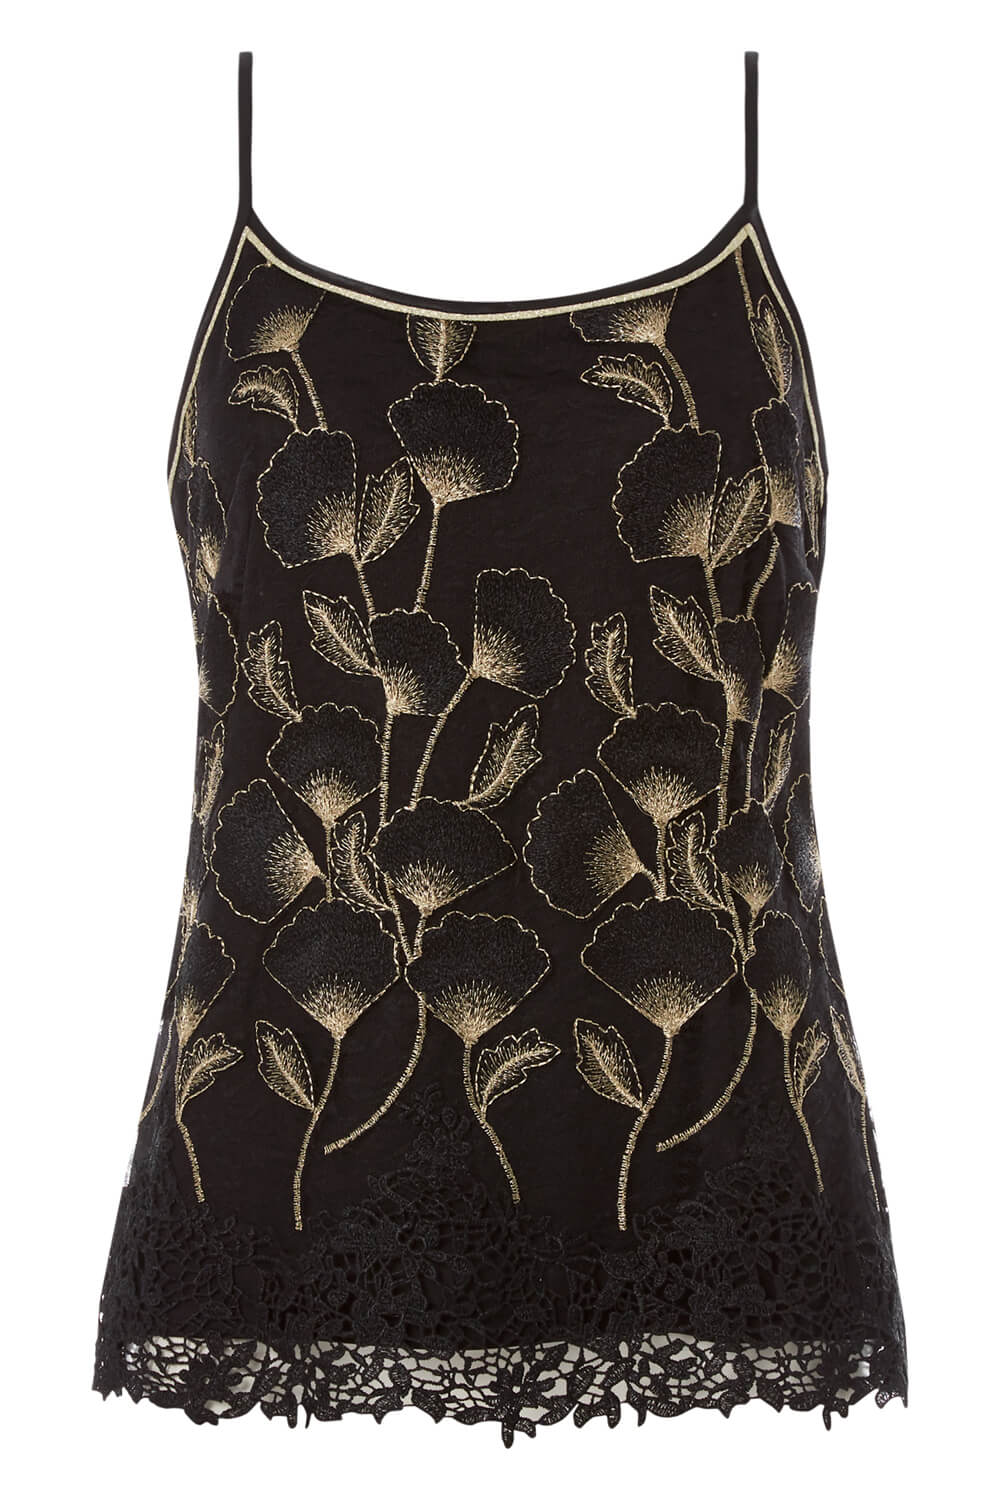 Gold Crochet Hem Embroidered Vest, Image 5 of 5